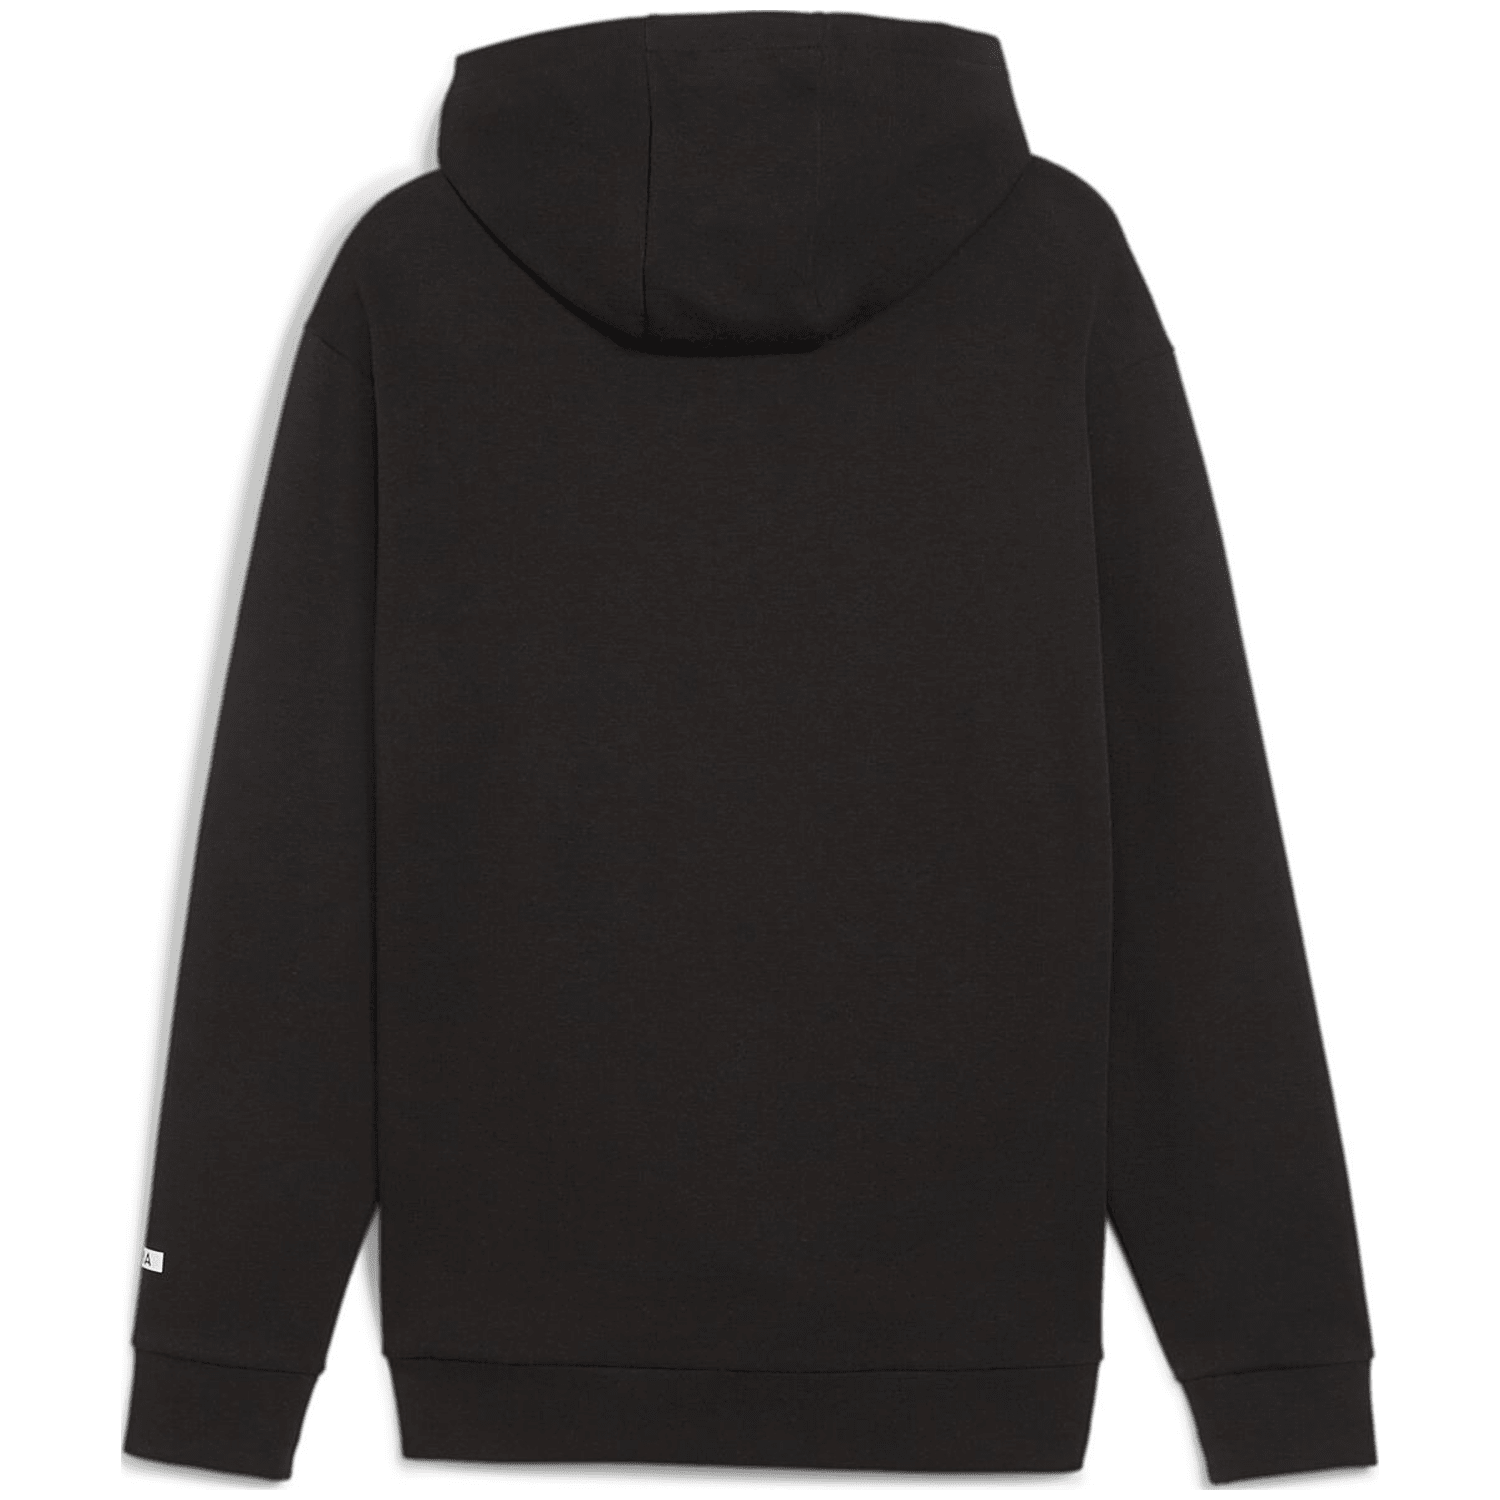 Puma Rad/Cal Half-Zip DK Herren Kapuzensweater